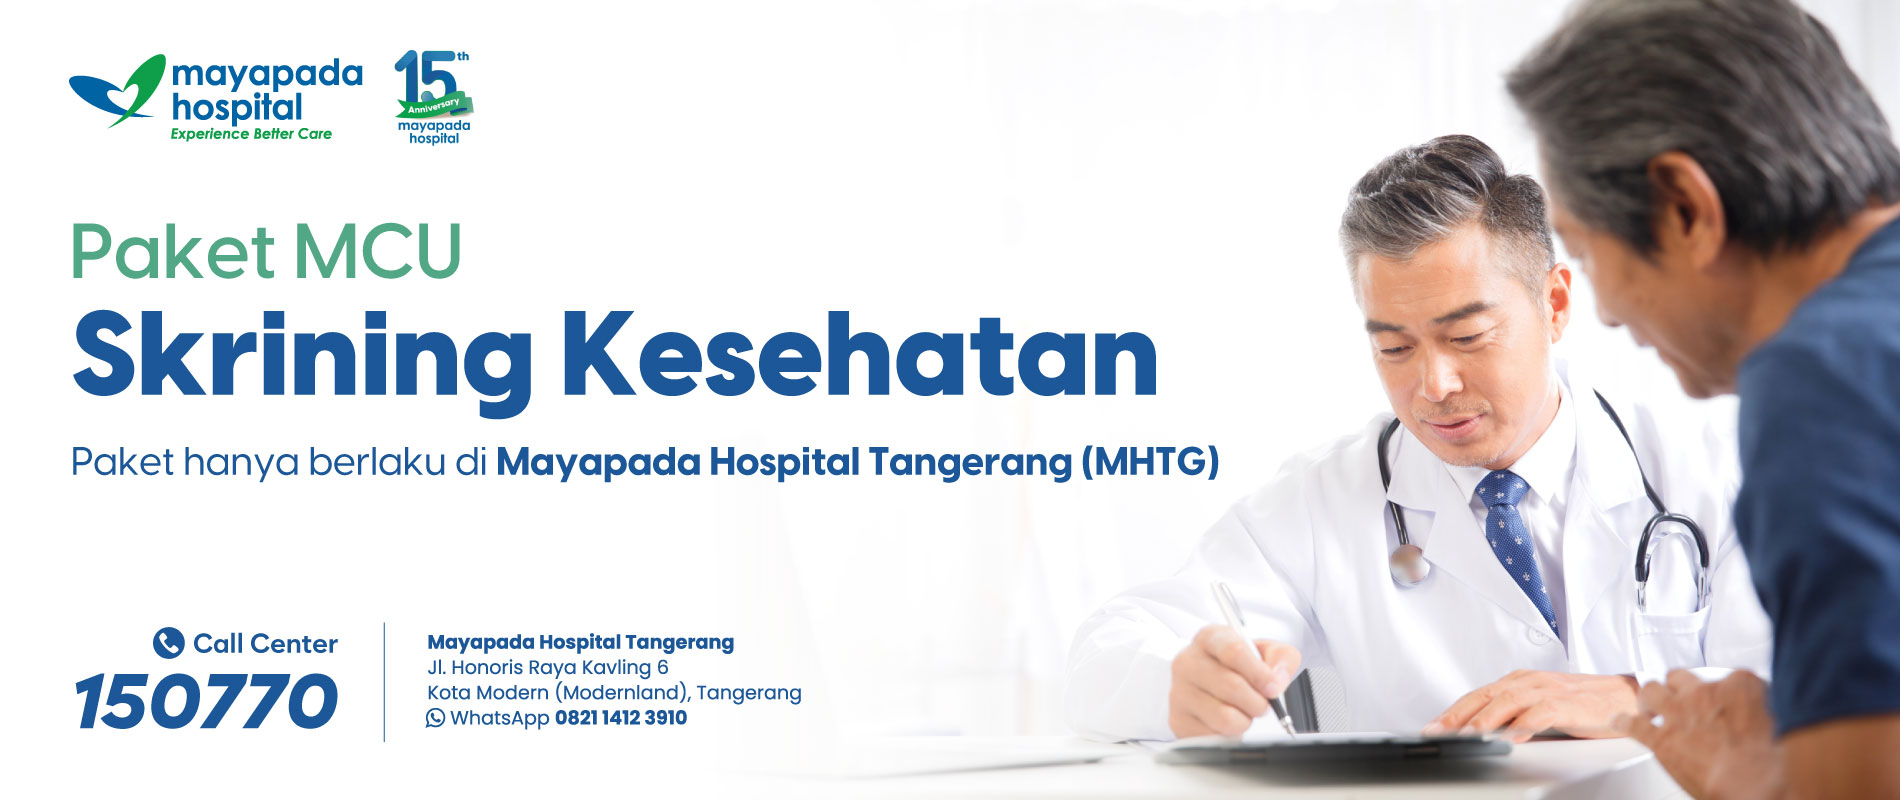 Paket MCU Skrining Kesehatan Mayapada Hospital Tangerang (MHTG) IMG